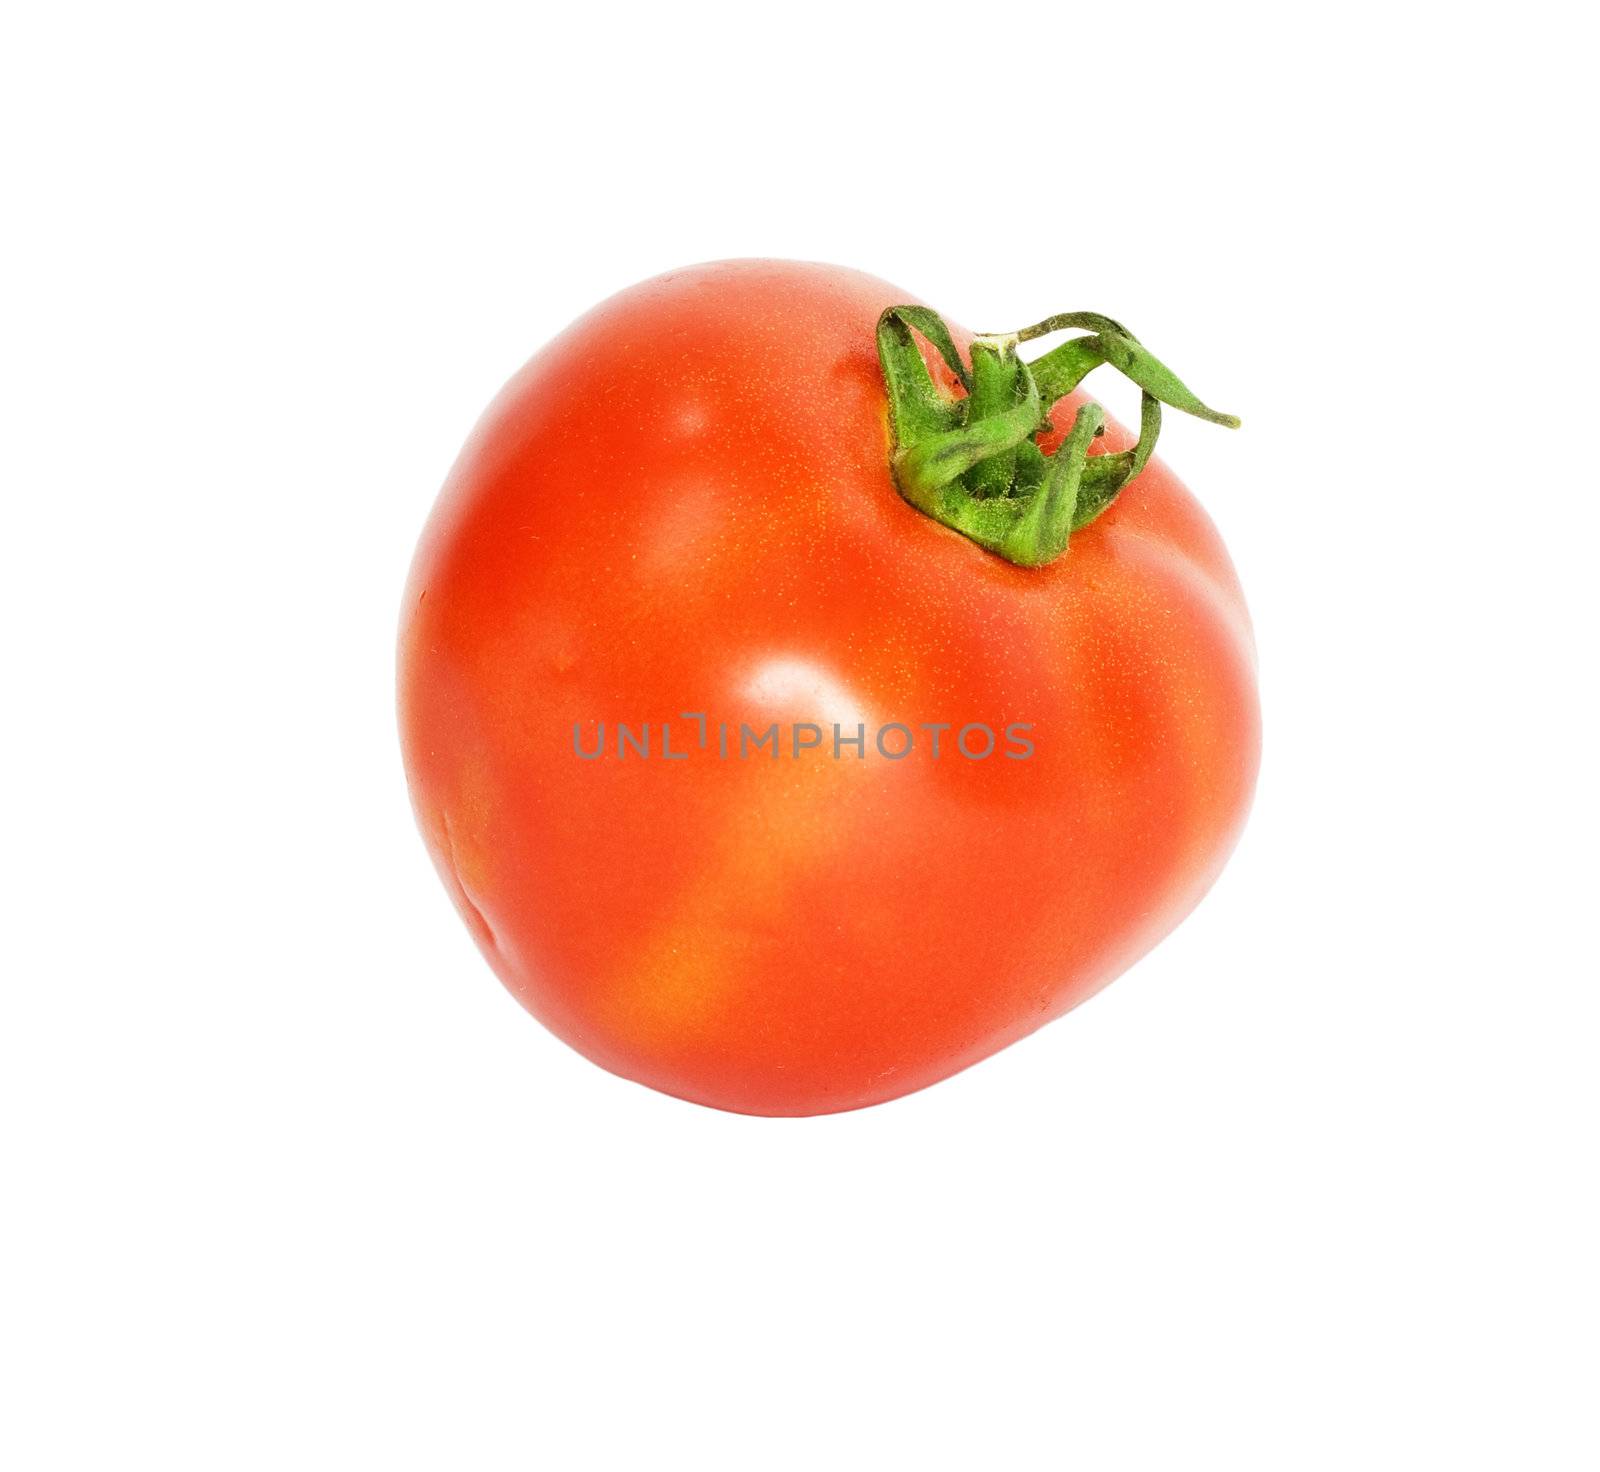 one tomato by schankz